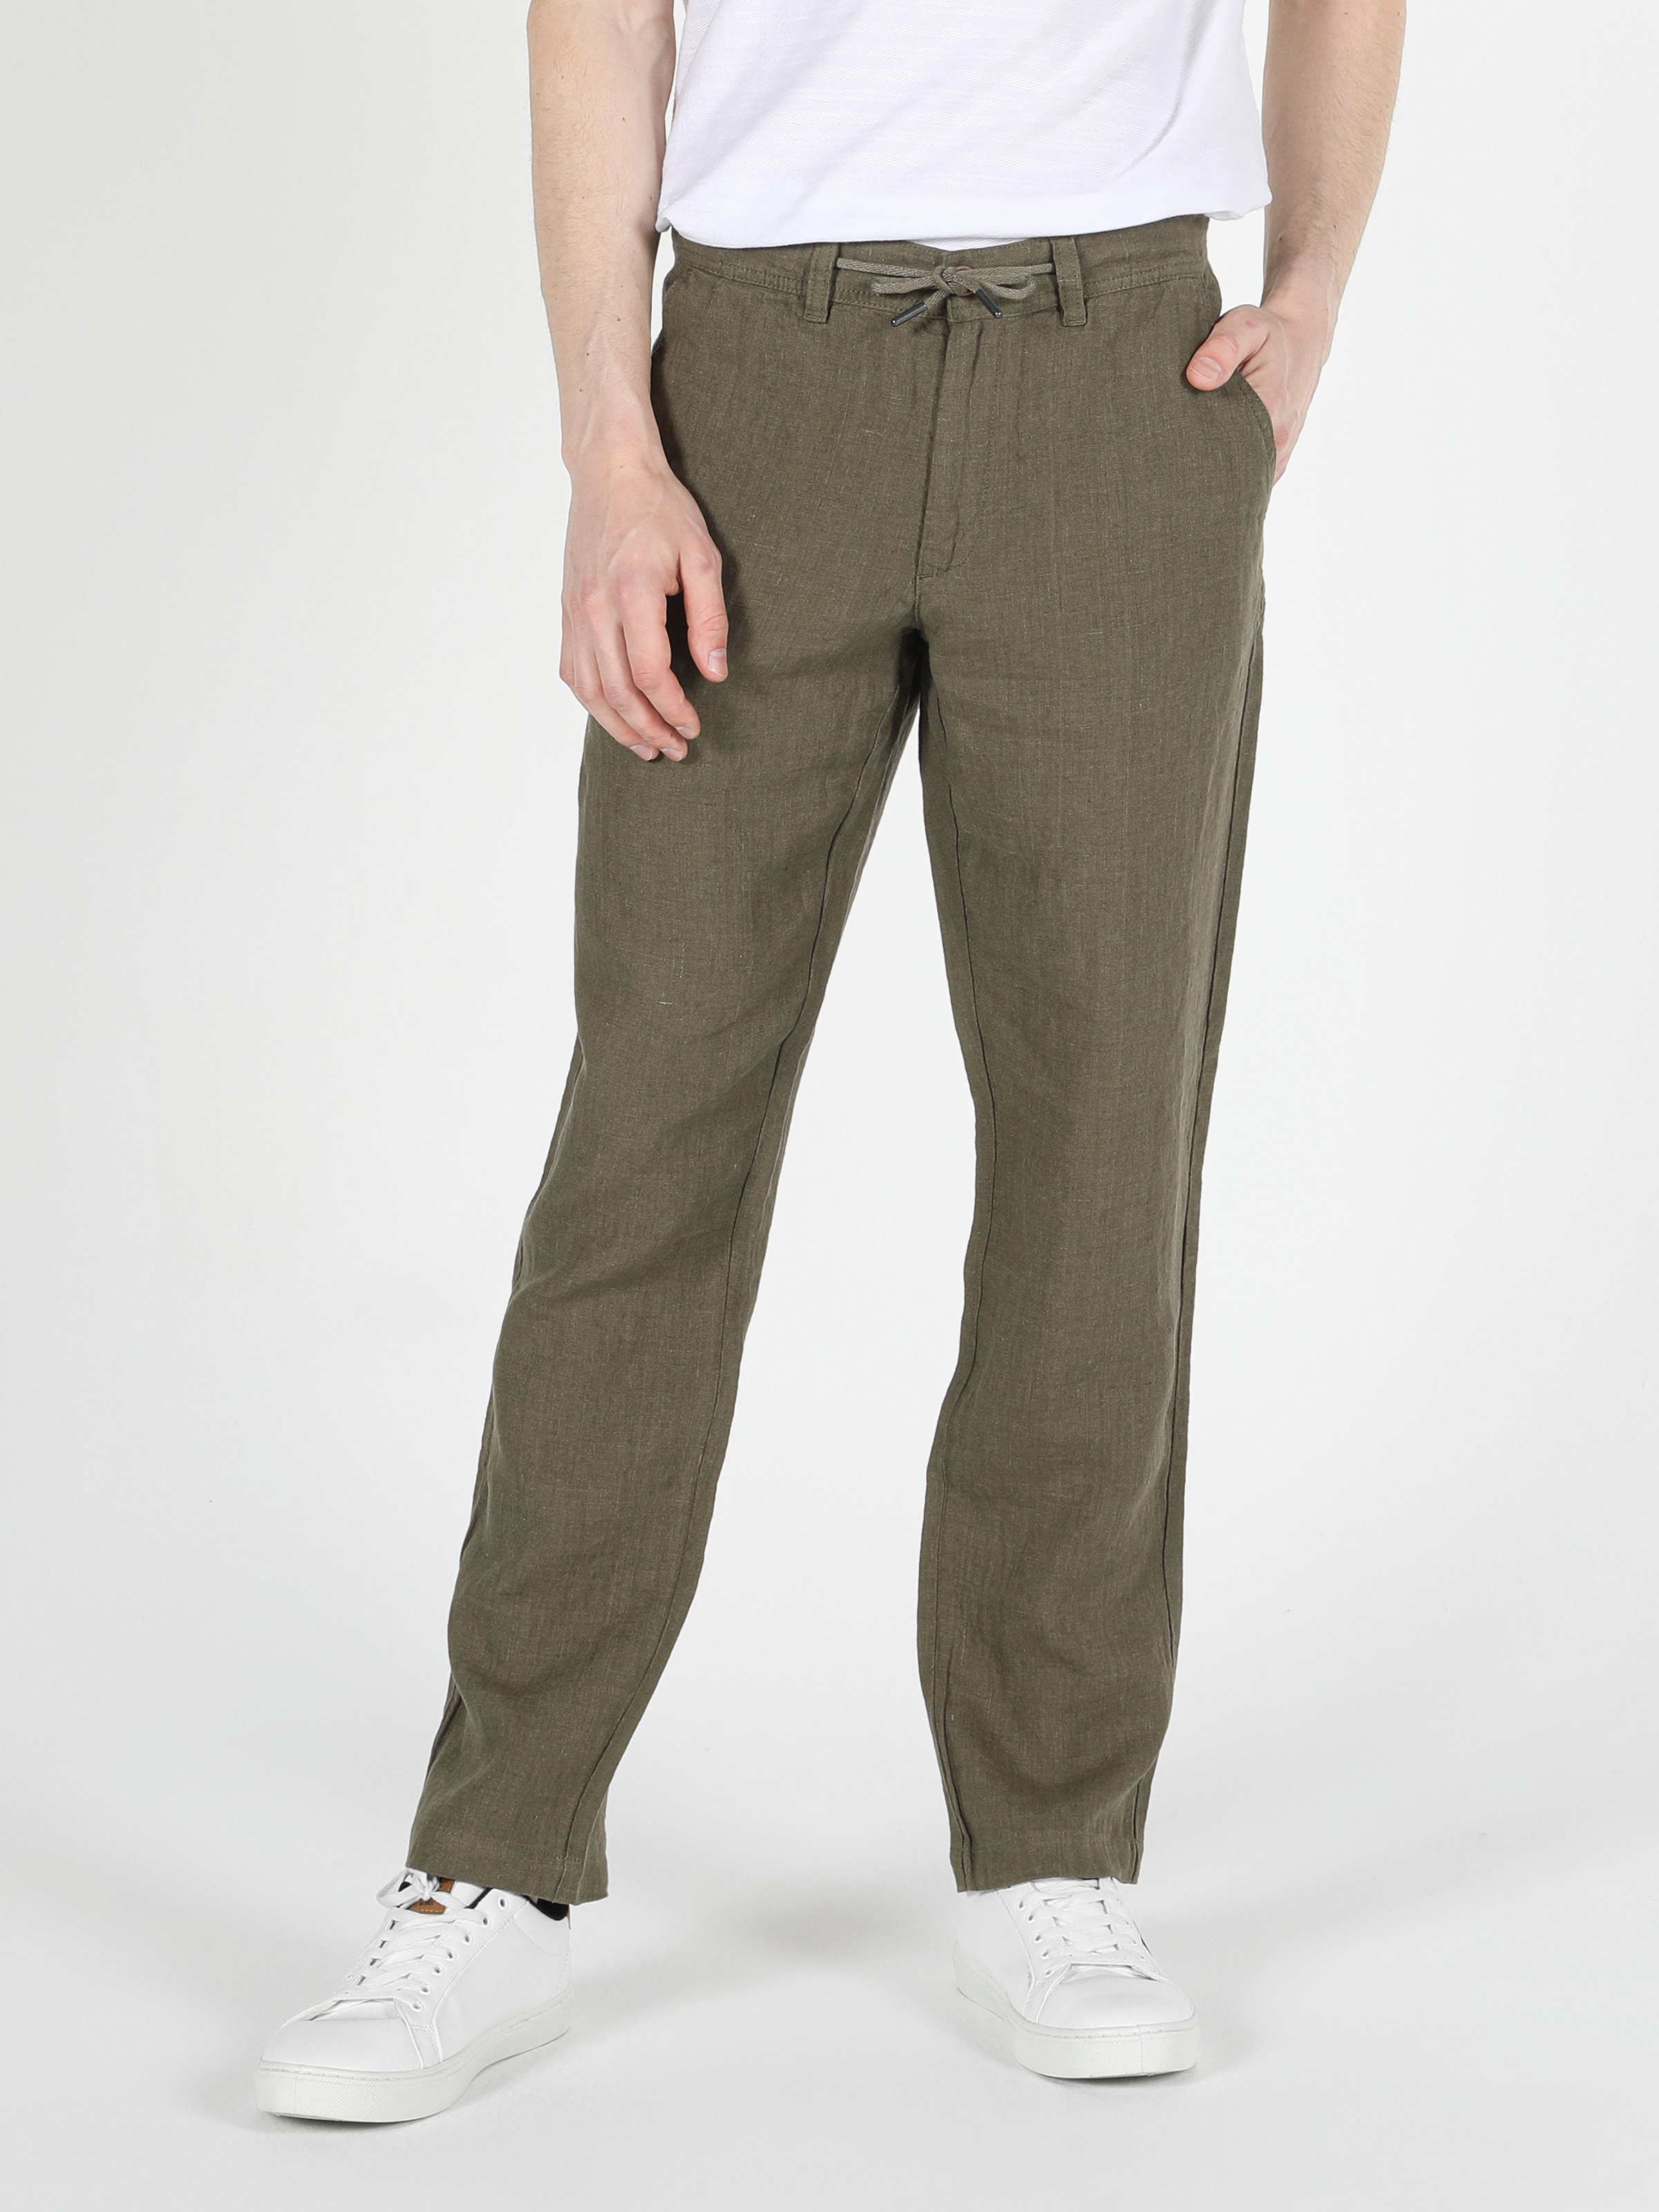 Afficher les détails de Pantalon Homme Vert Taille Moyenne Coupe Normale Jambe Droite